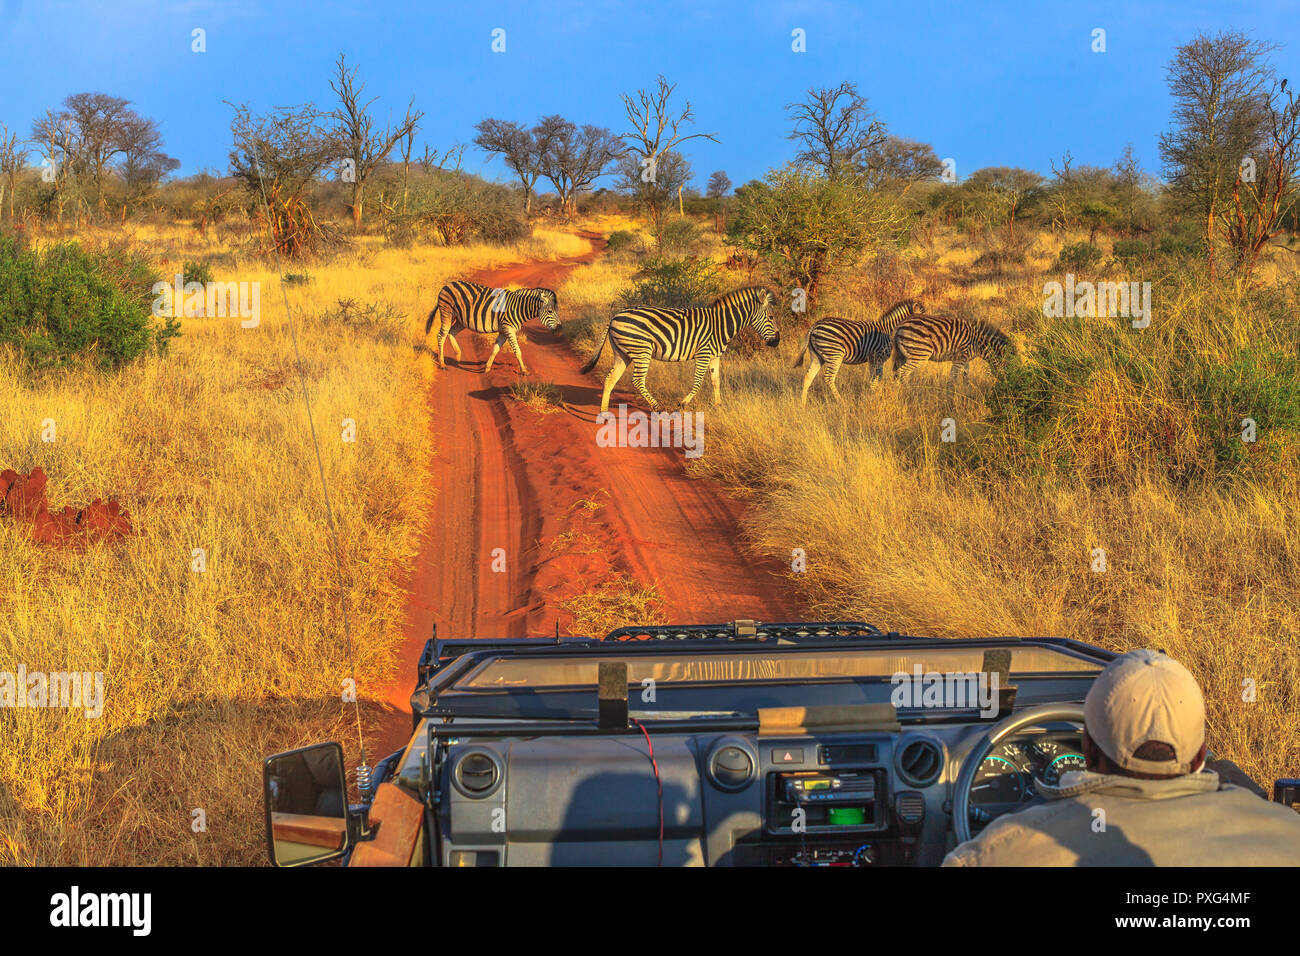 Gruppe der Zebras ein roter Sand Straße während einem game drive Safari Kreuz. Madikwe Savannenlandschaft in Südafrika. Das Zebra gehört zu dem Pferd Familie und zeichnen sich durch die einzigartige schwarze Streifen. Stockfoto